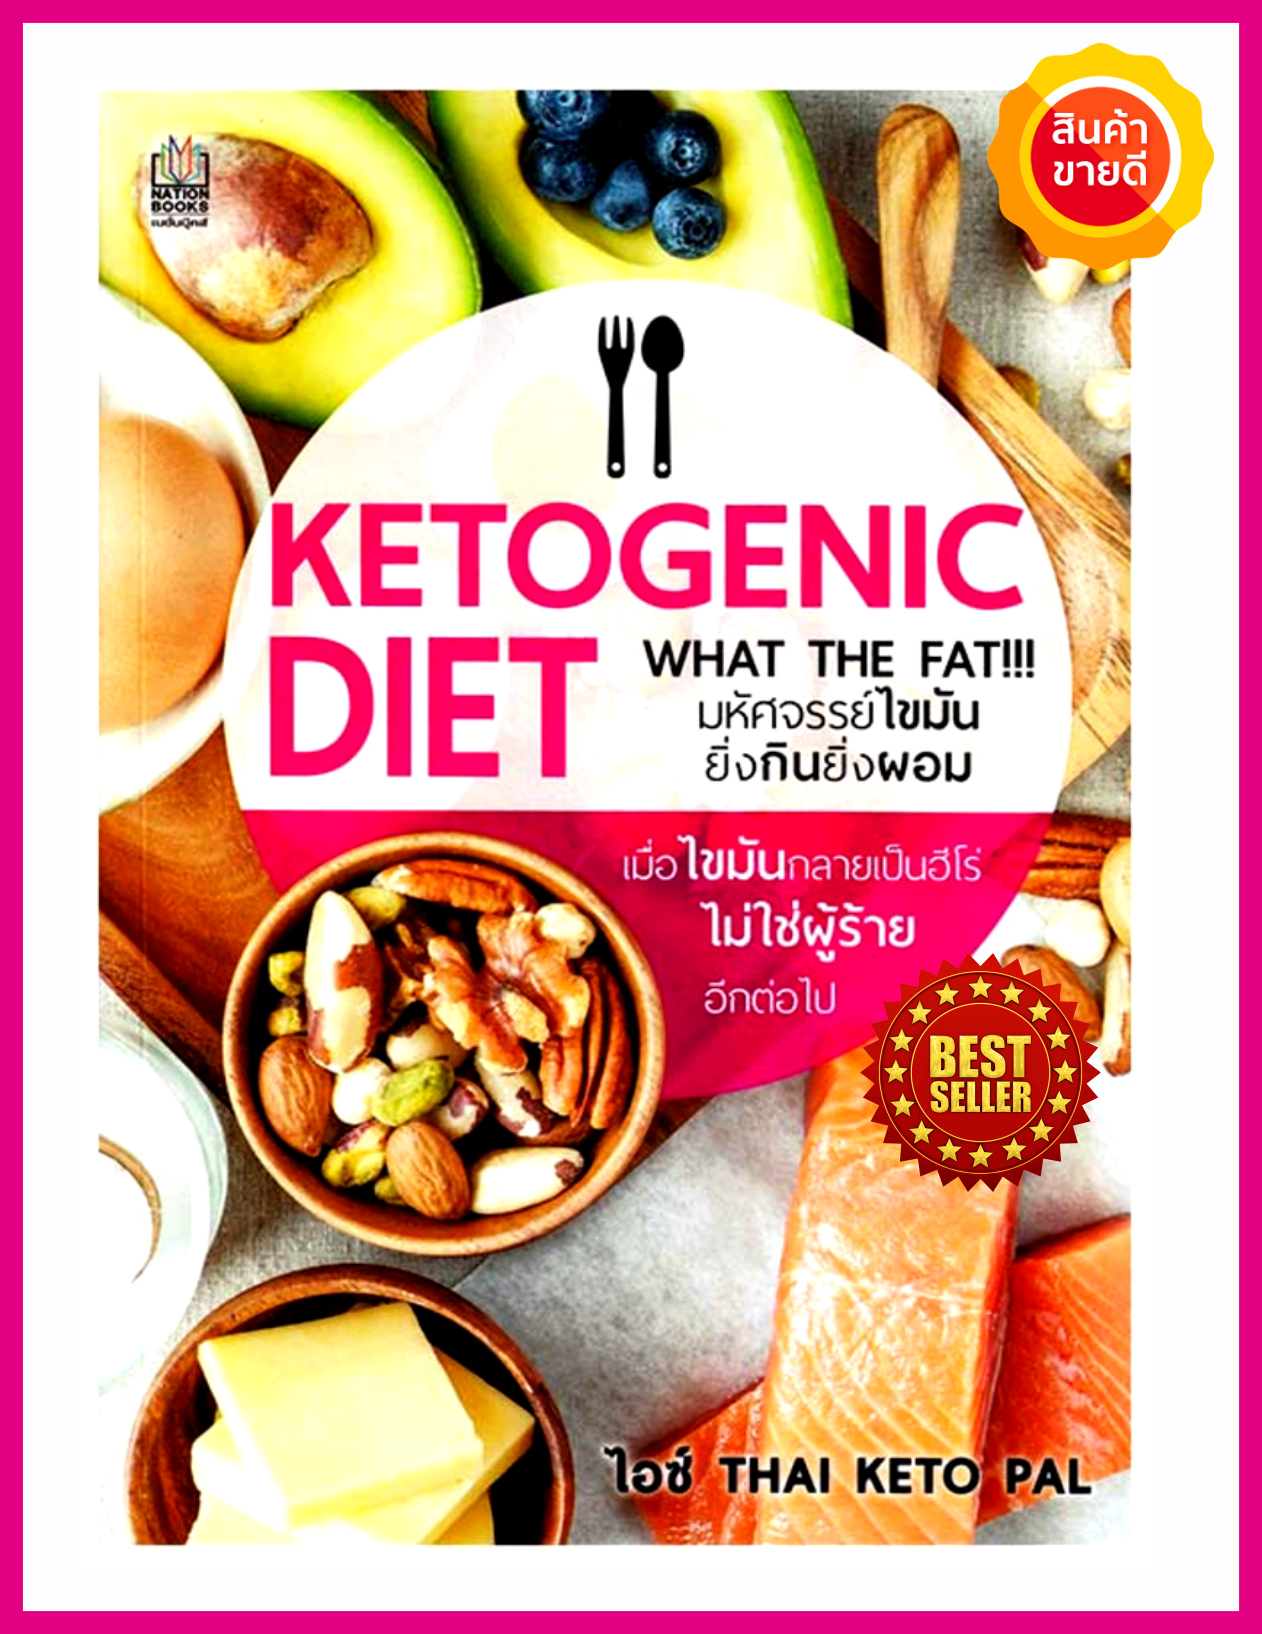 หนังสือ Ketogenic Diet มหัศจรรย์ไขมัน ยิ่งกินยิ่งผอม คู่มือให้ความรู้คีโตเจนิค ไดเอท อย่างละเอียด การเลือกทานอาหารแบบคีโต ด้วยโปรแกรม Keto